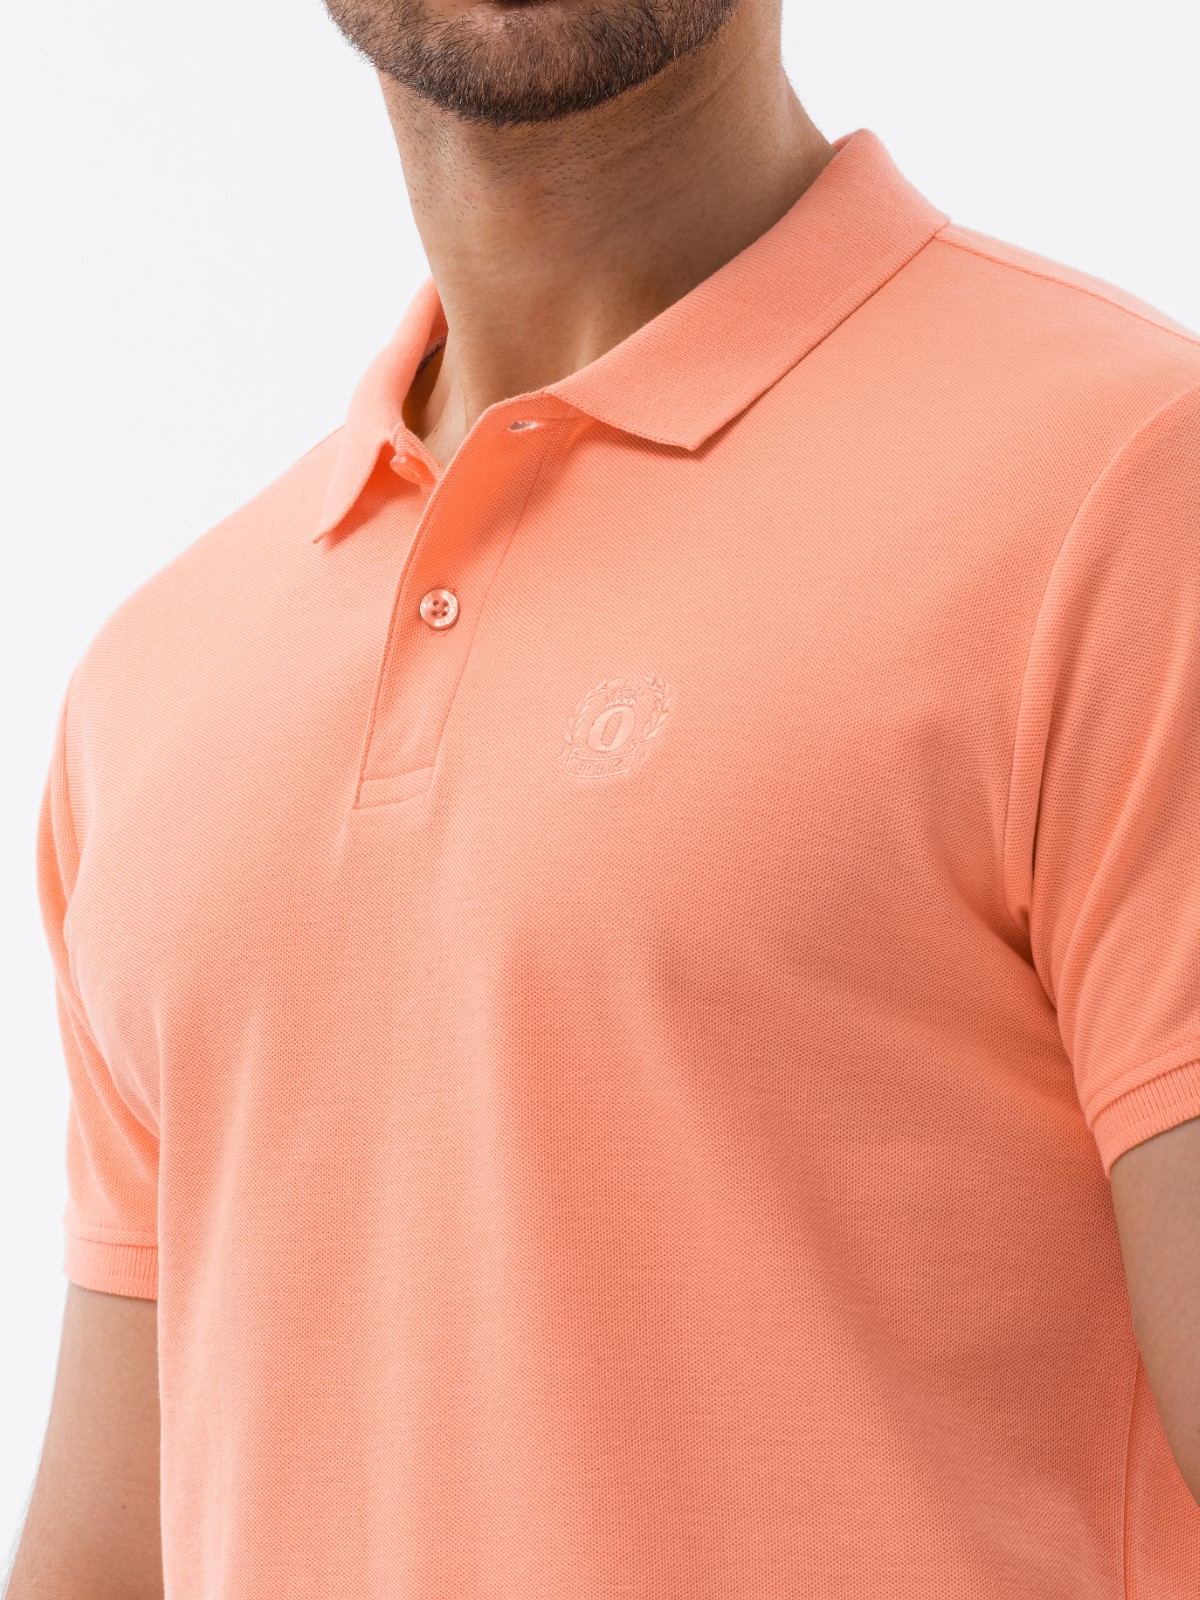 Men's plain polo shirt S1374 - peach ...